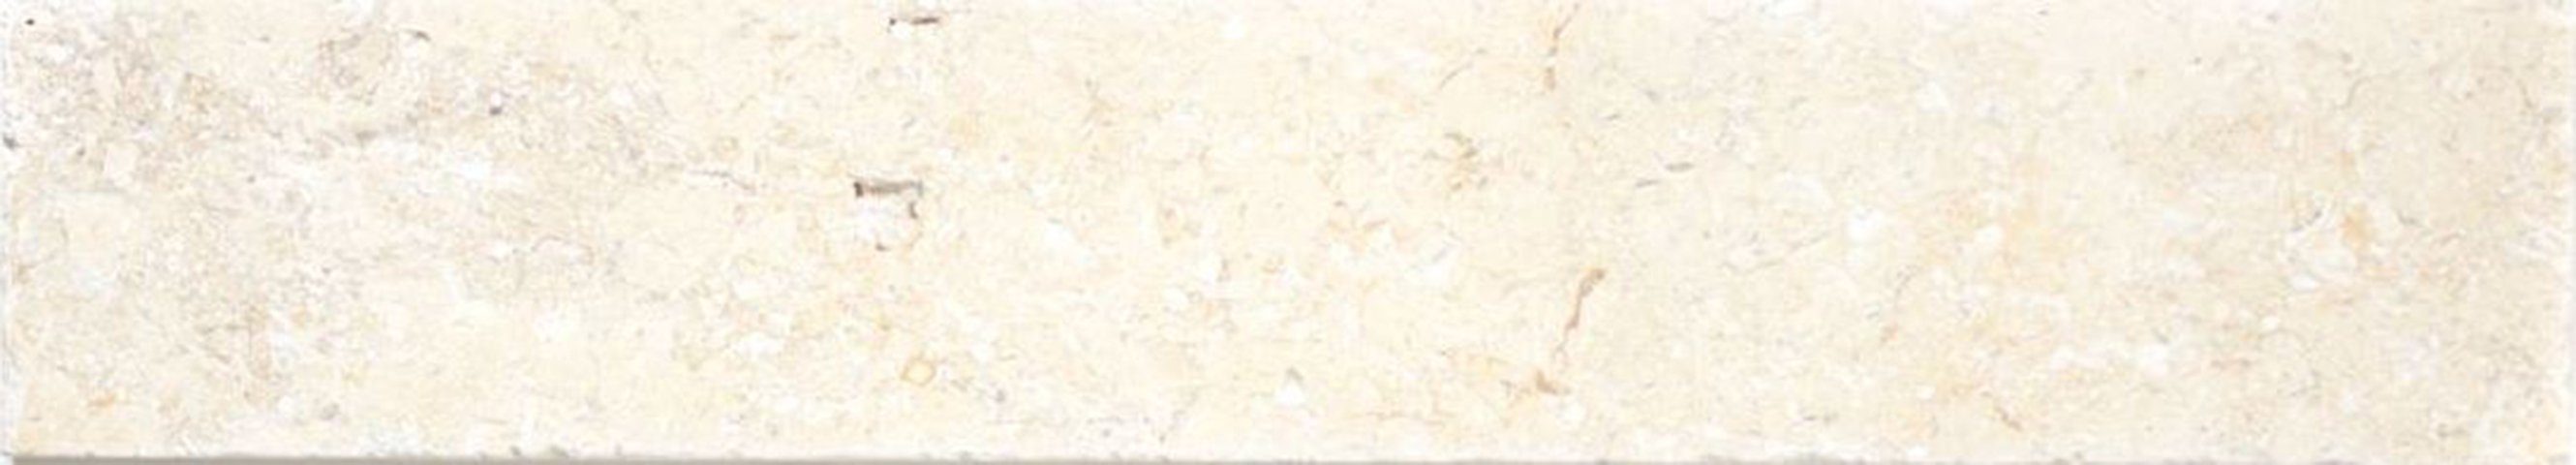 Mosani Naturstein beige weißgelb Kalkstein Limestone Sockel Sockelfliese